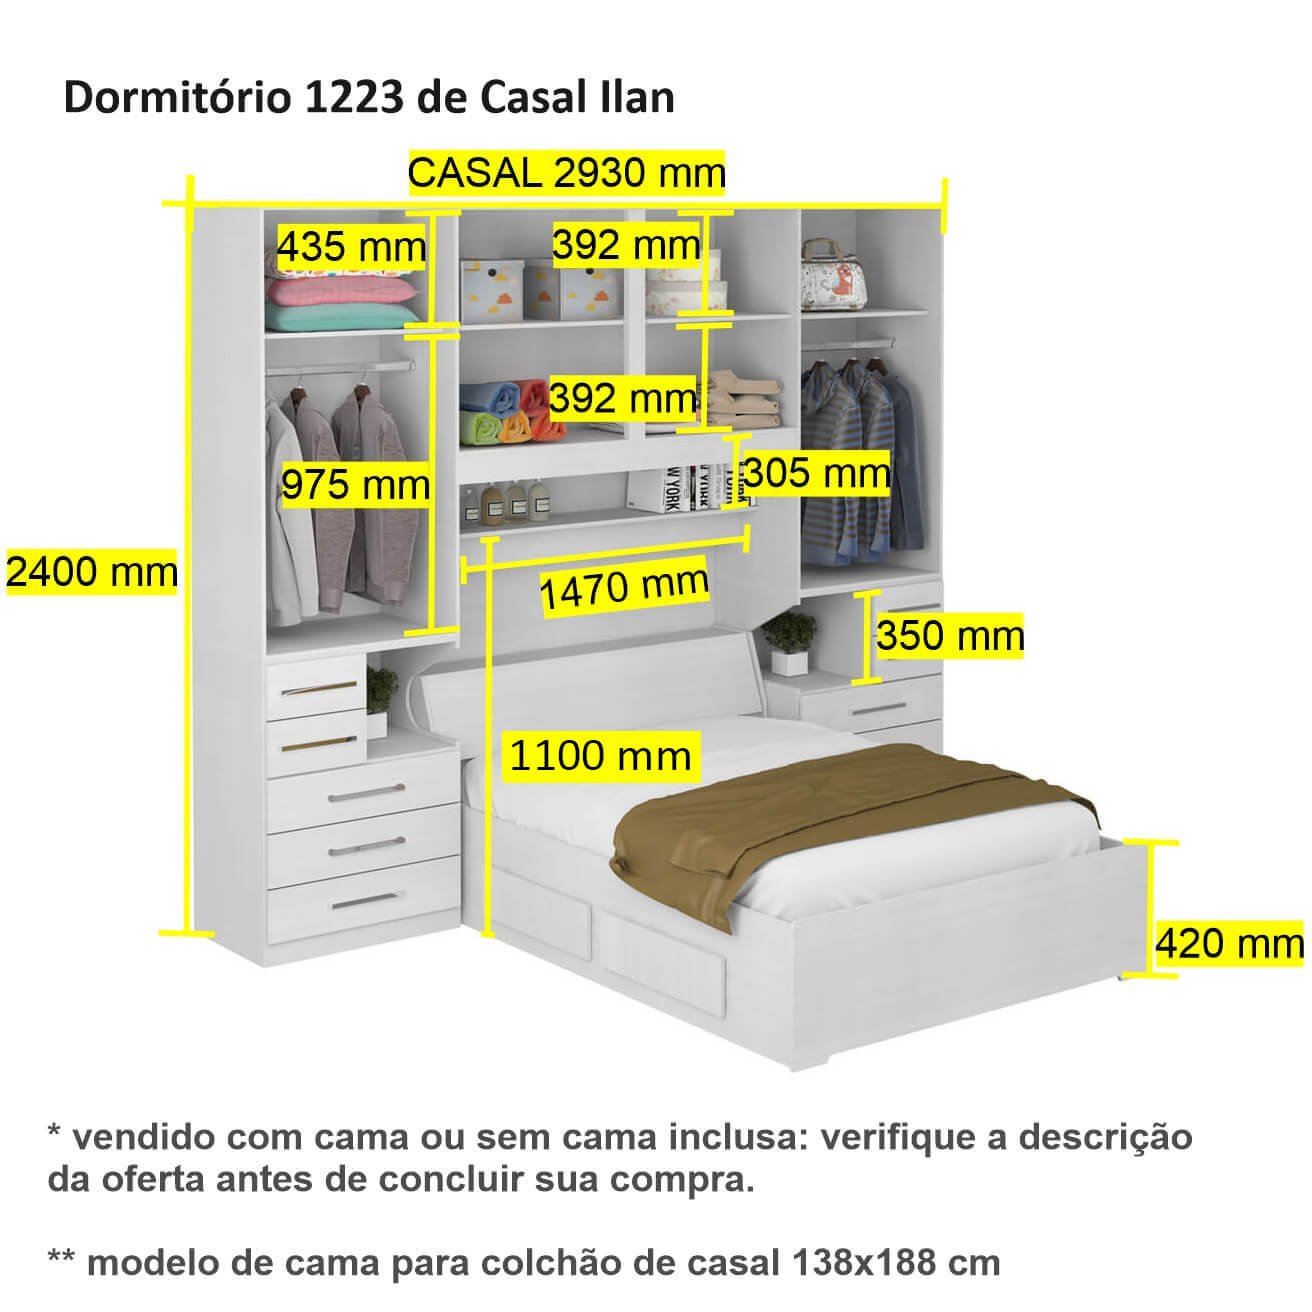 Dormitório de Casal sem Cama 1223s Noce Málaga - 3